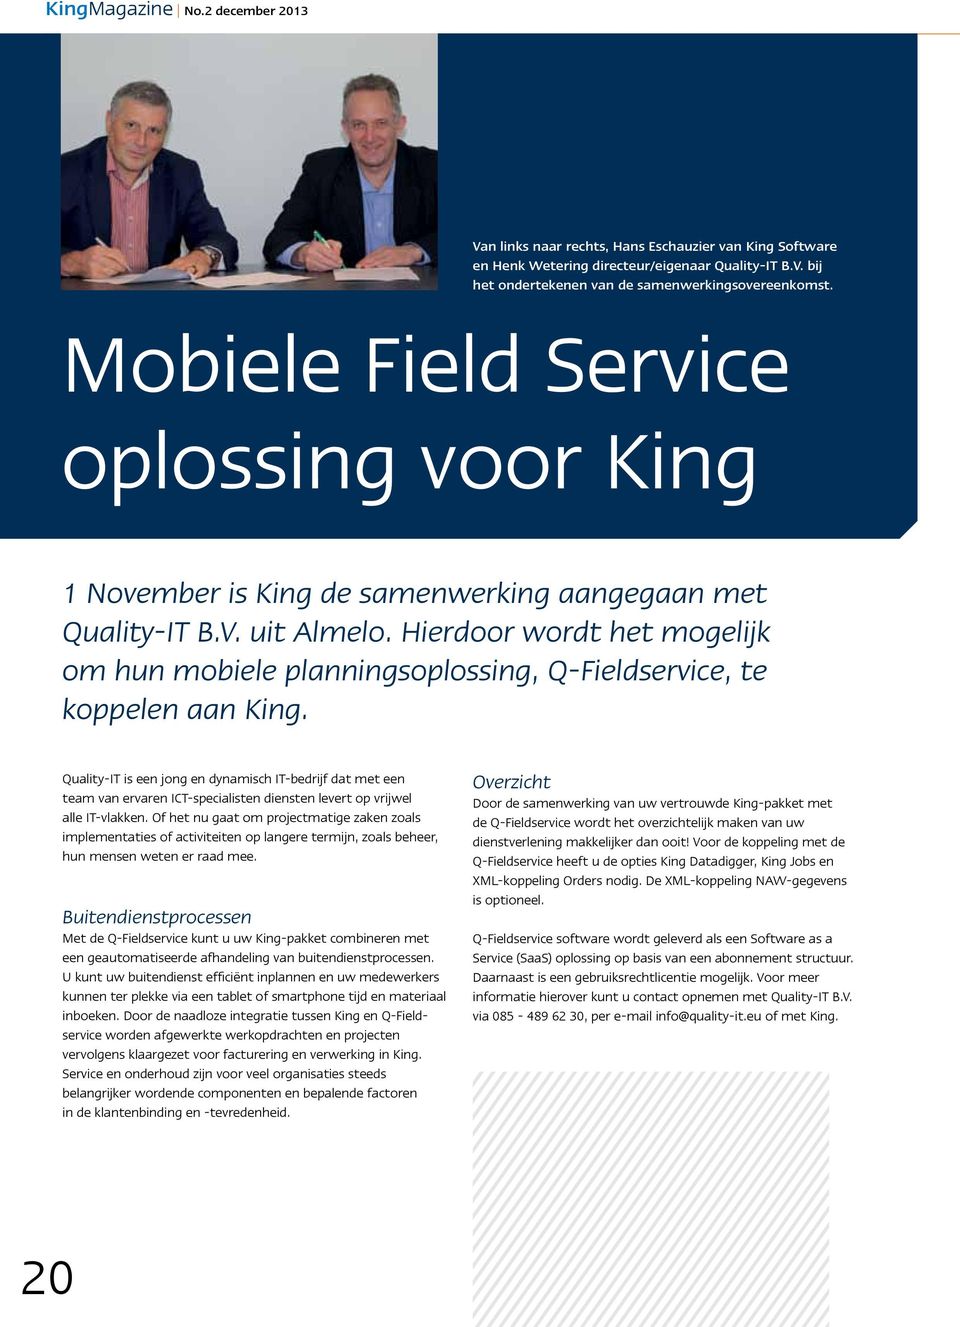 Hierdoor wordt het mogelijk om hun mobiele planningsoplossing, Q-Fieldservice, te koppelen aan King.